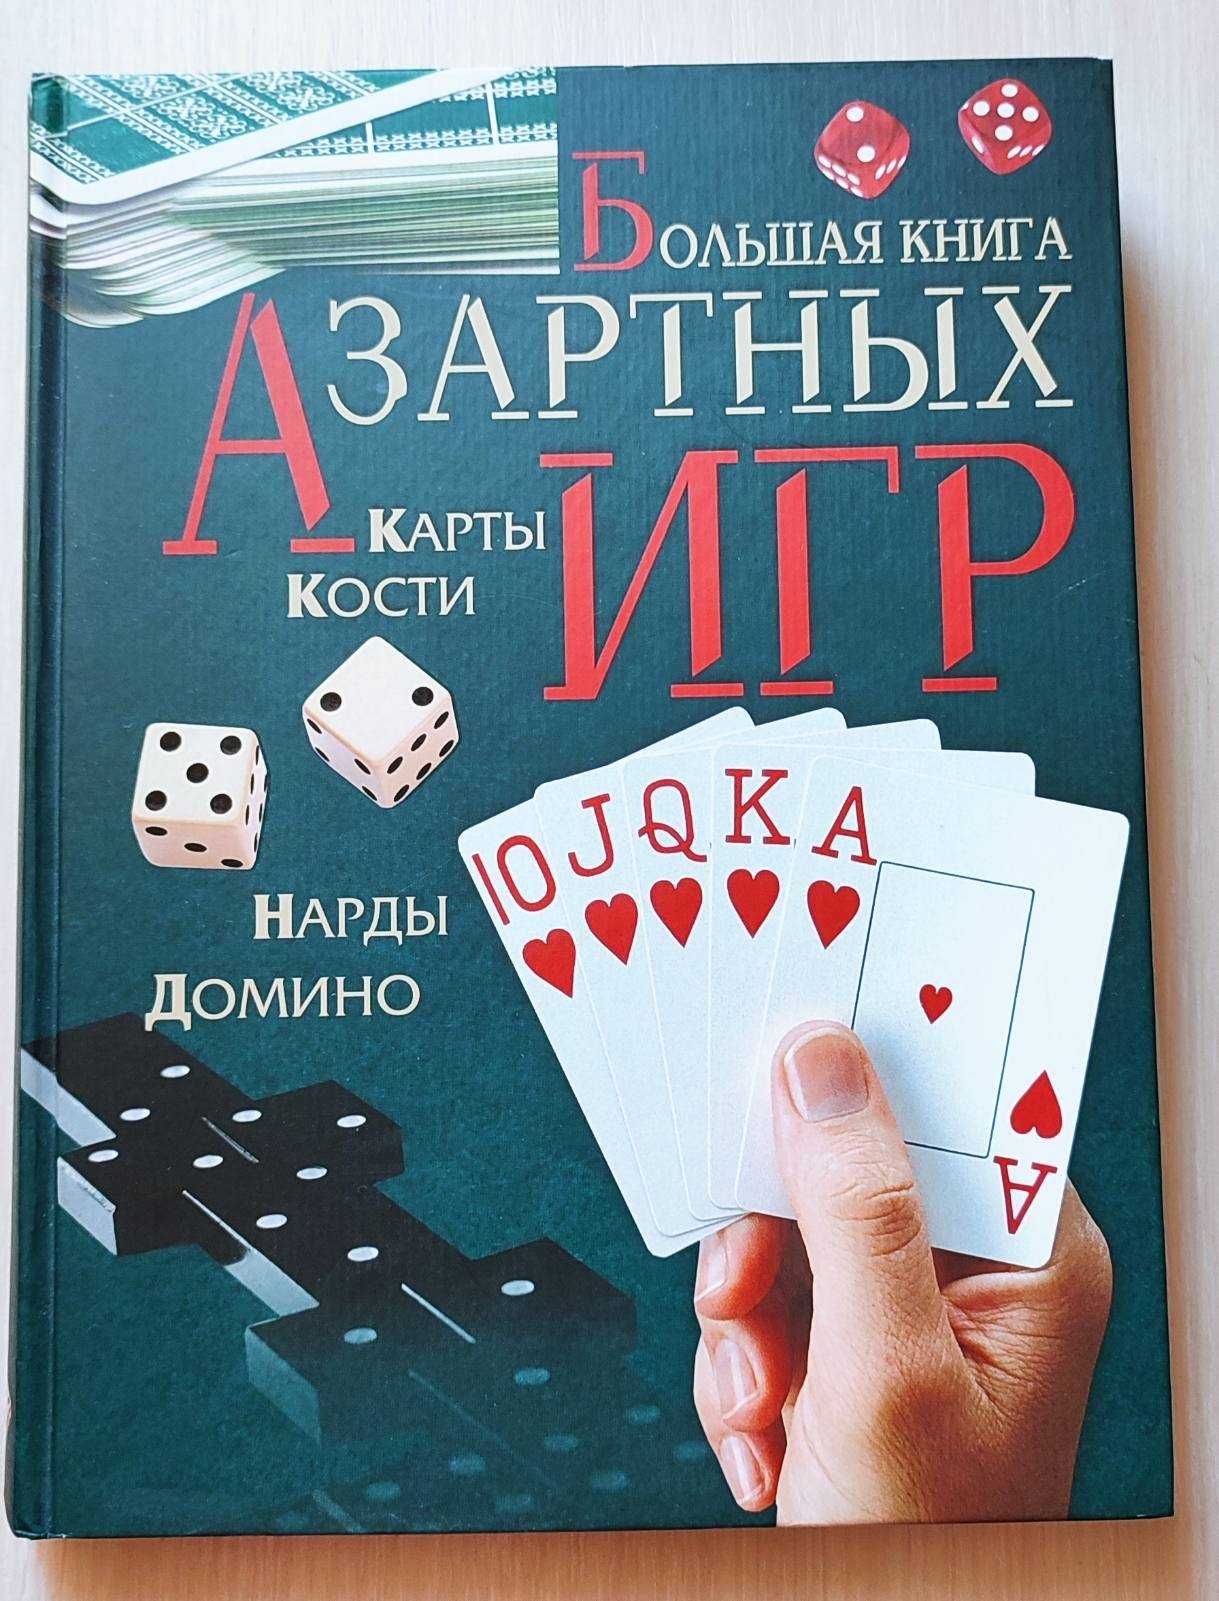 "Большая книга Азартных игр"